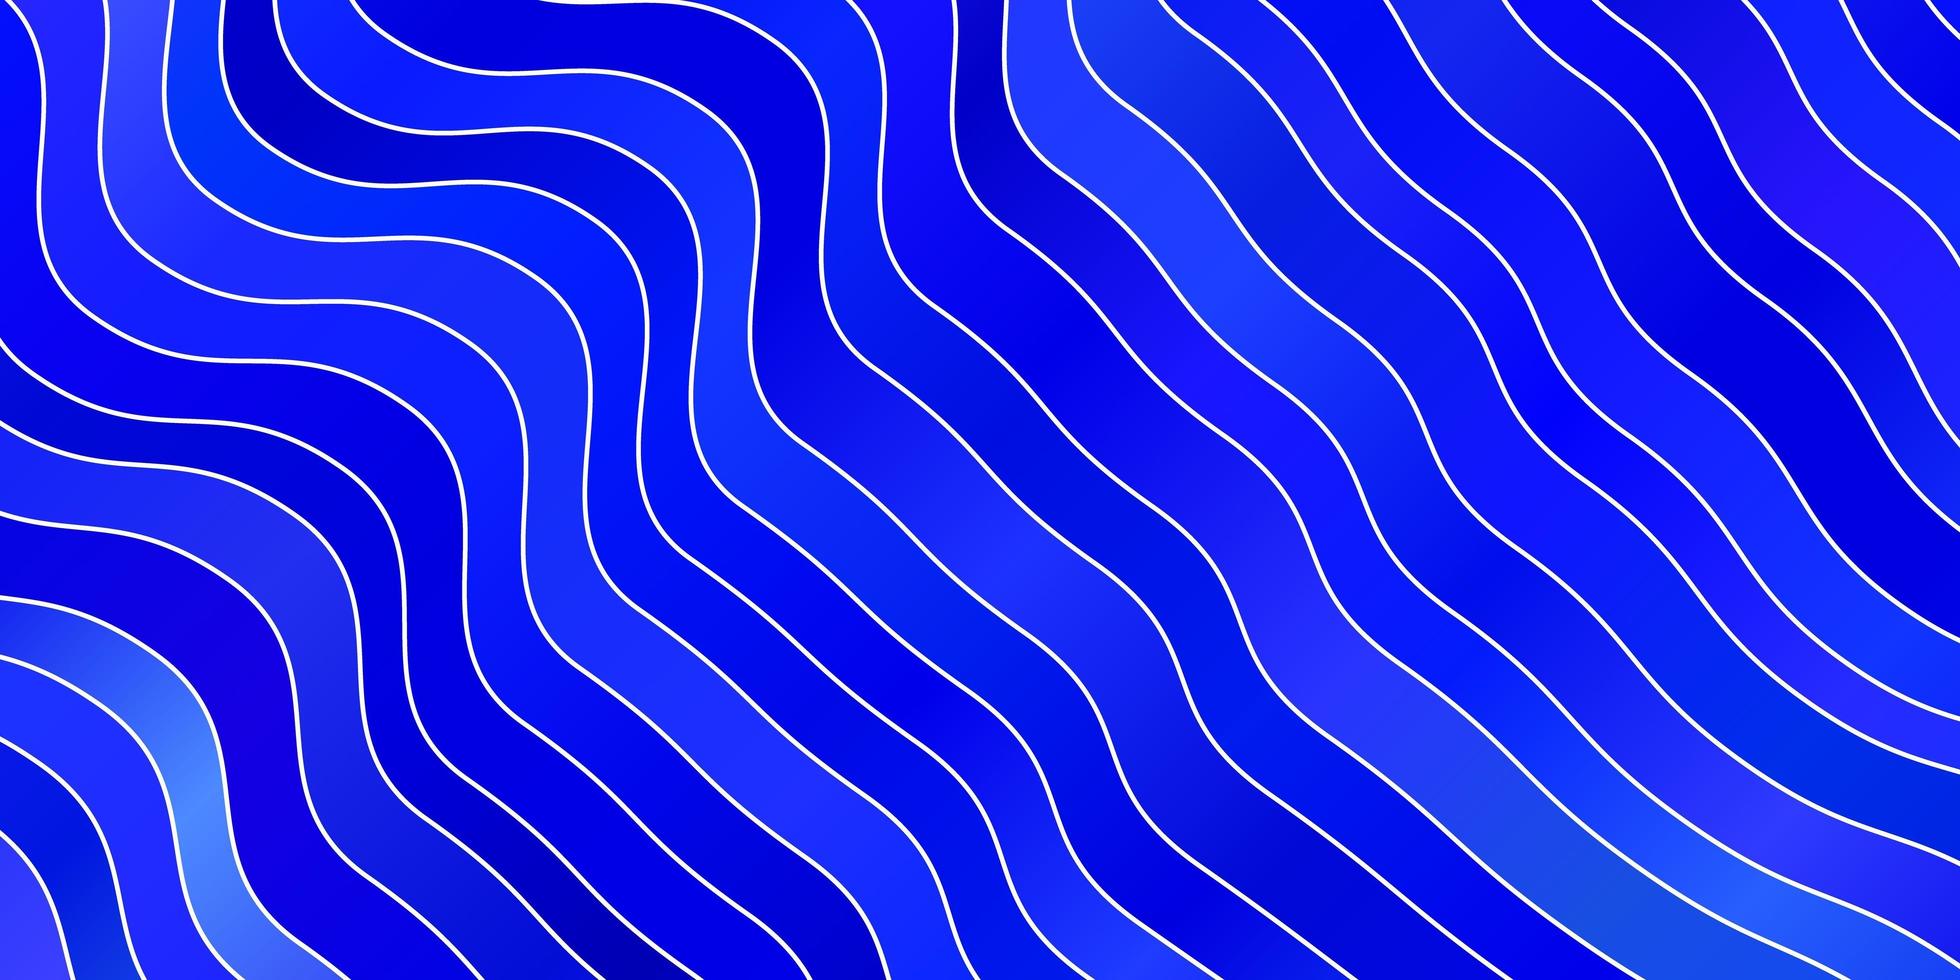 padrão de vetor azul claro com curvas. nova ilustração colorida com linhas dobradas. padrão para anúncios, comerciais.